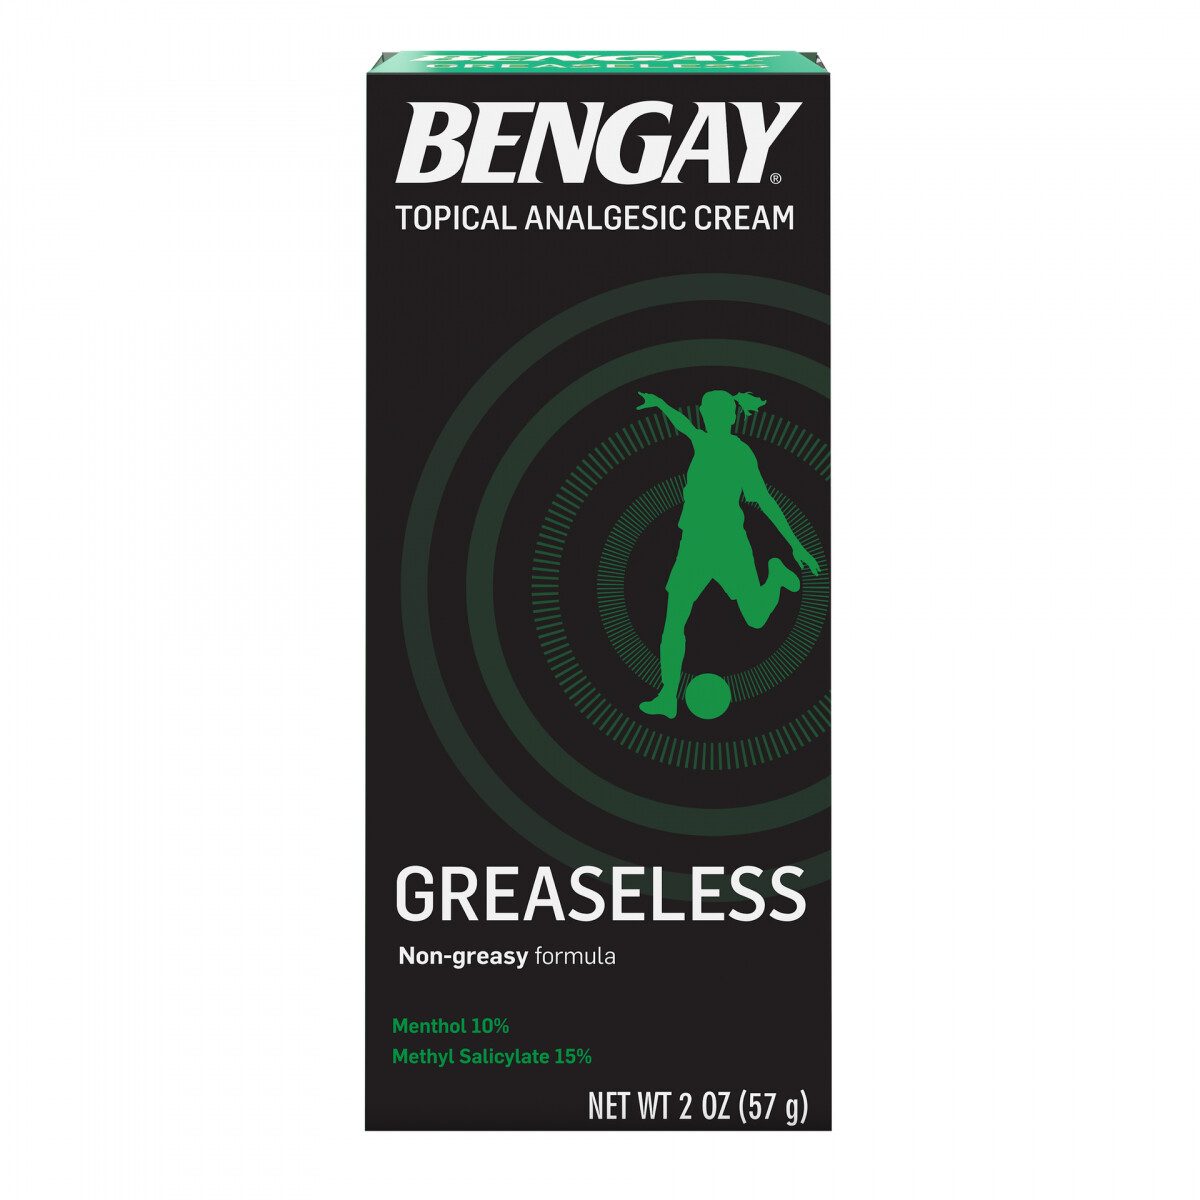 Bengay Greaseless